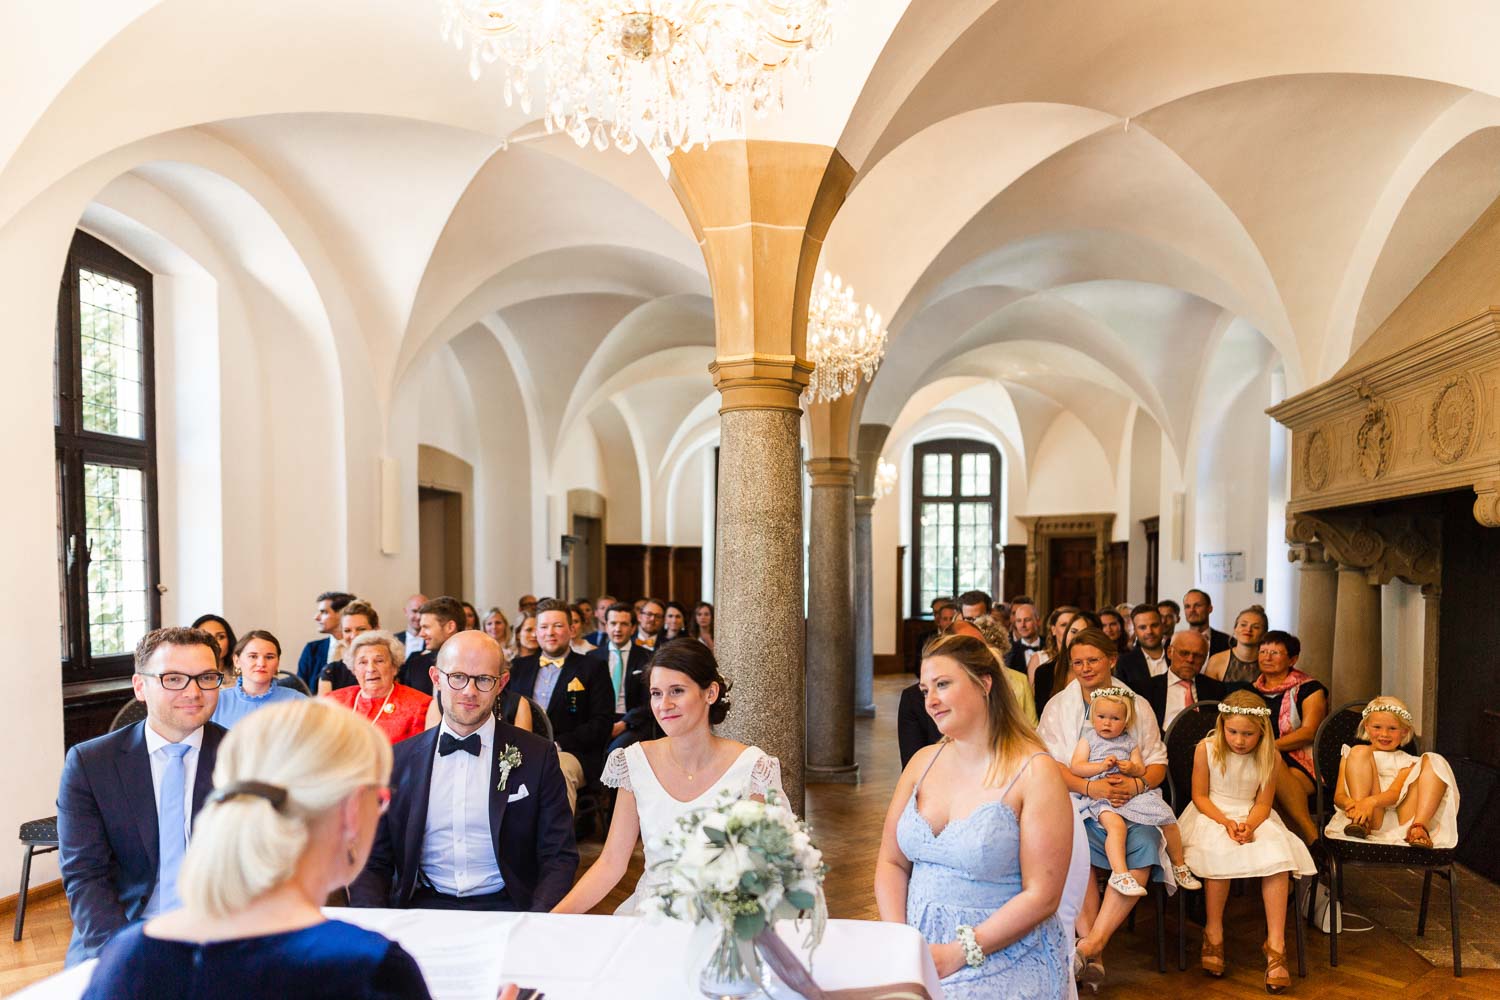 Braut und Bräutigam sowie Trauzeugen bei standesamtlicher Trauung im Rittersaal von Haus Ruhr sitzen am Trautisch. Im Vordergrund sitzt die Standesbeamtin Oda von und zur Mühlen, im Hintergrund sitzen die Gäste